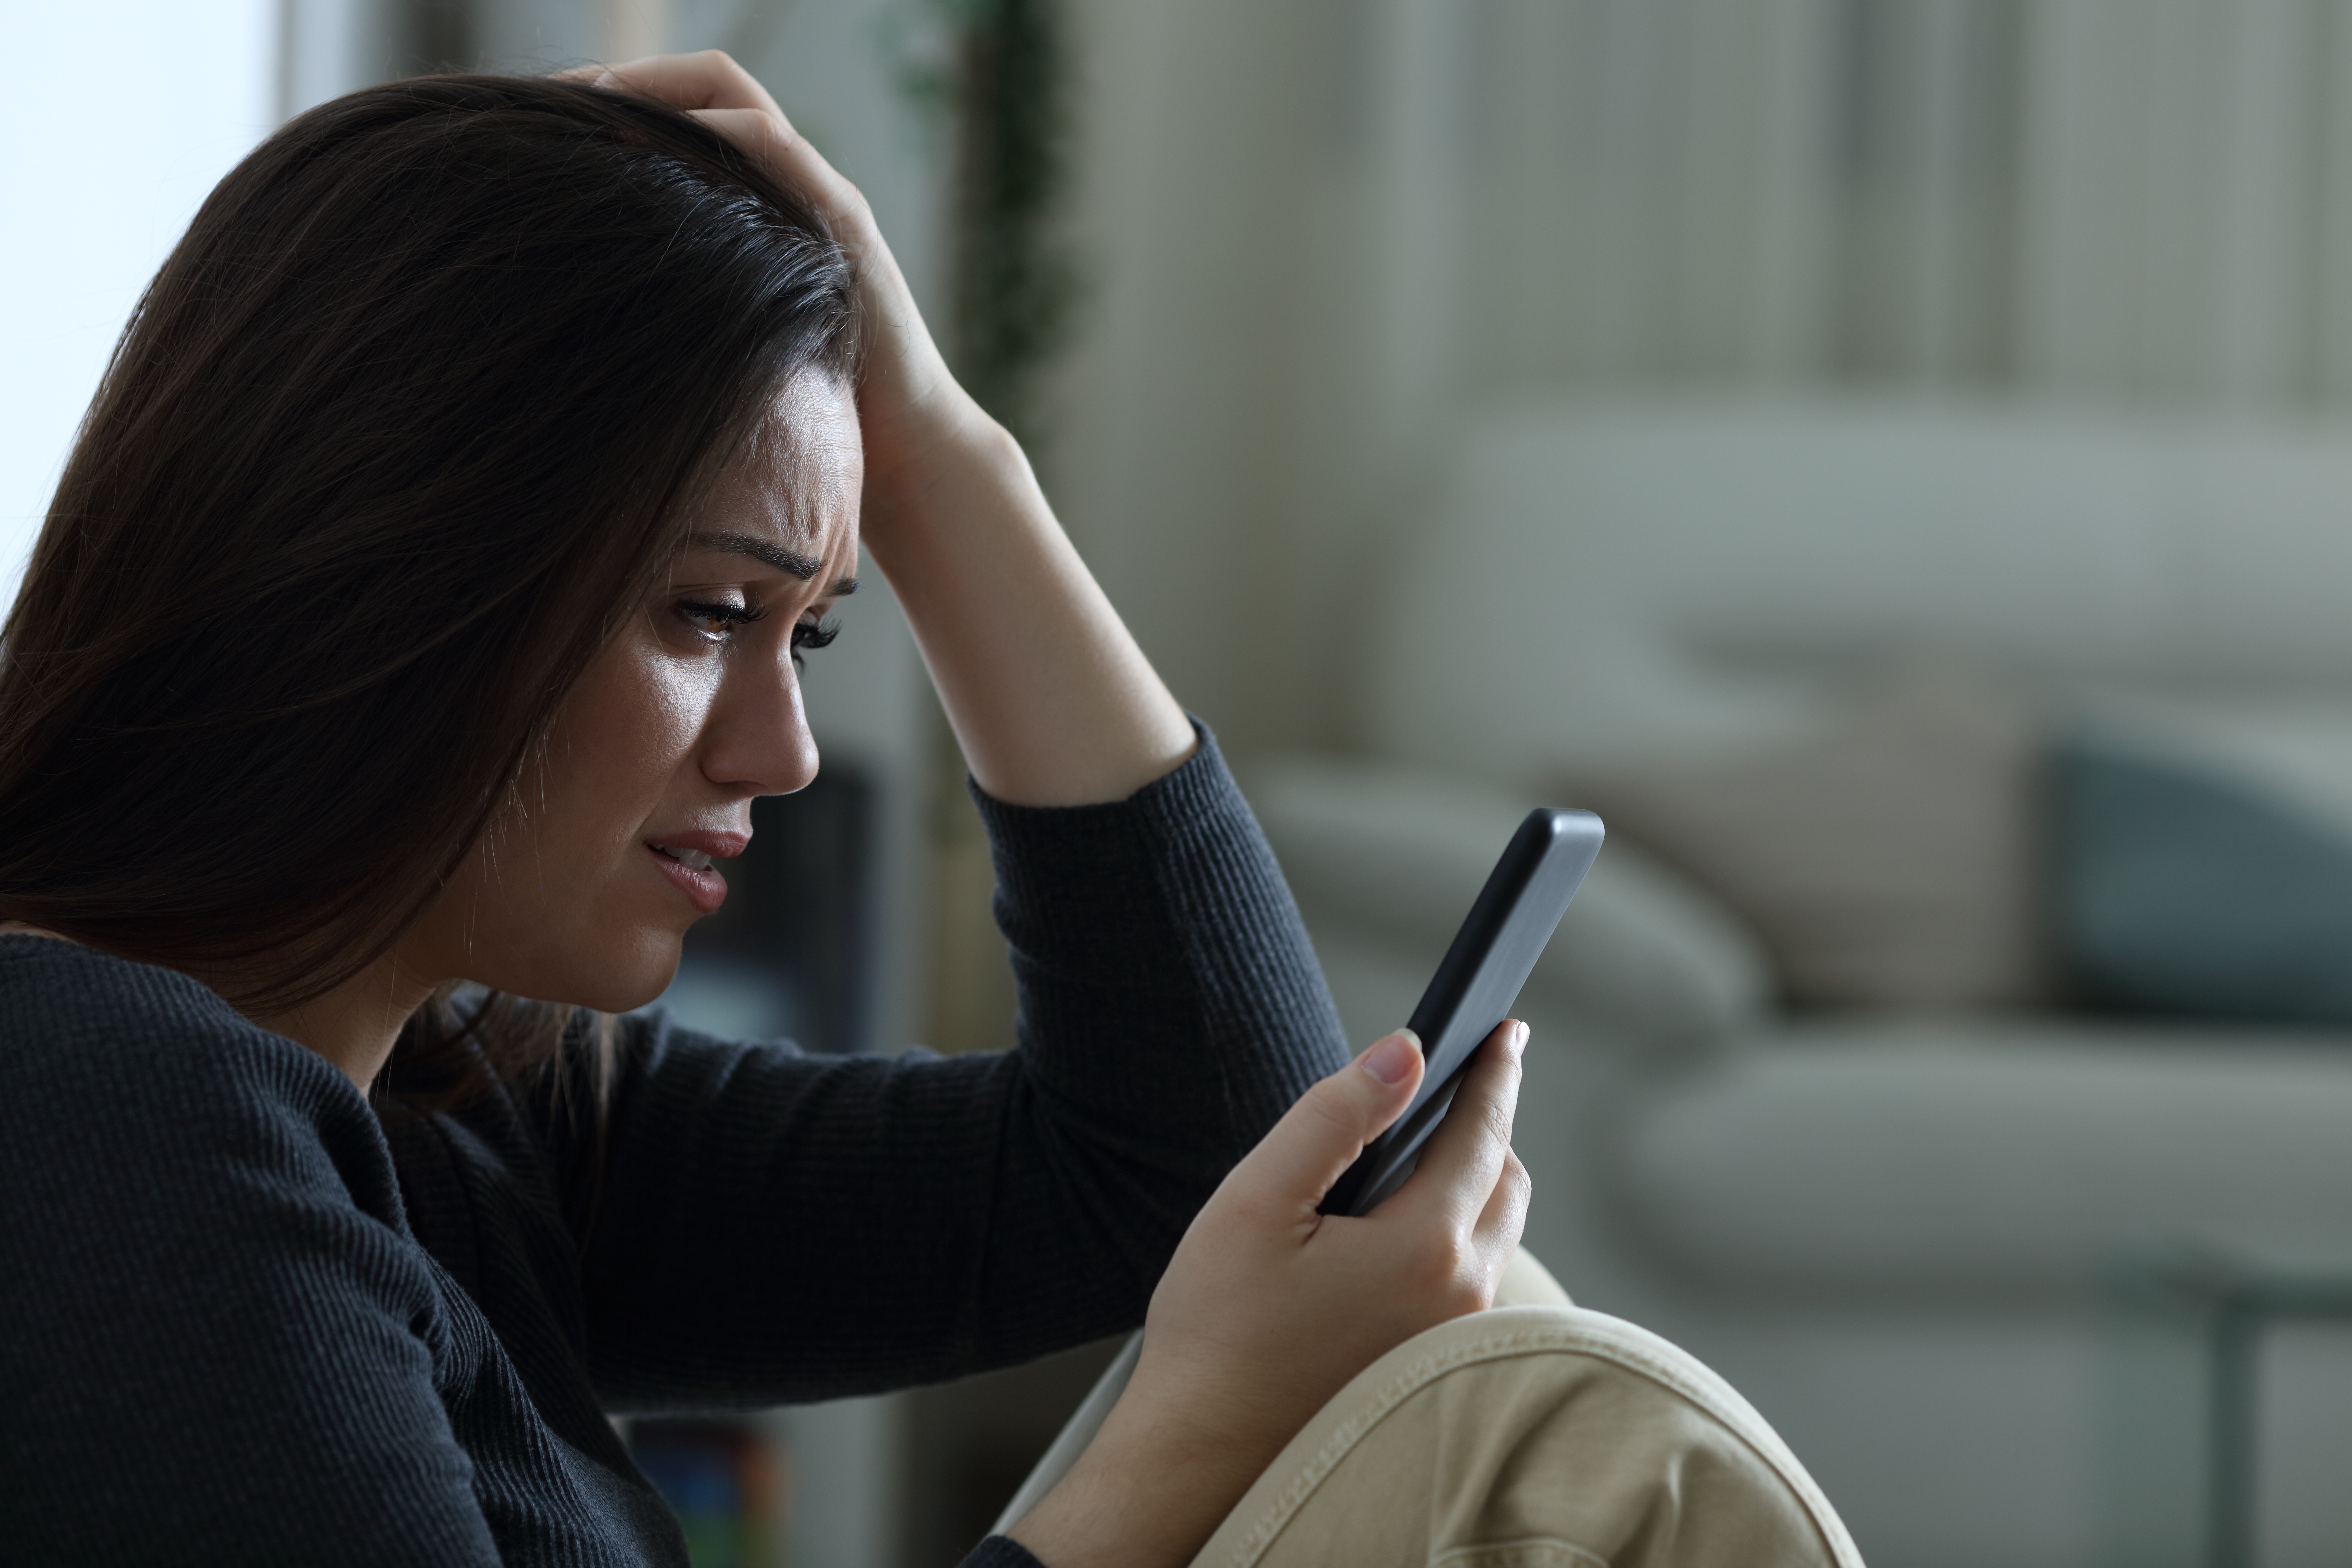 Une femme à l'air triste alors qu'elle regarde son téléphone | Source : Shutterstock